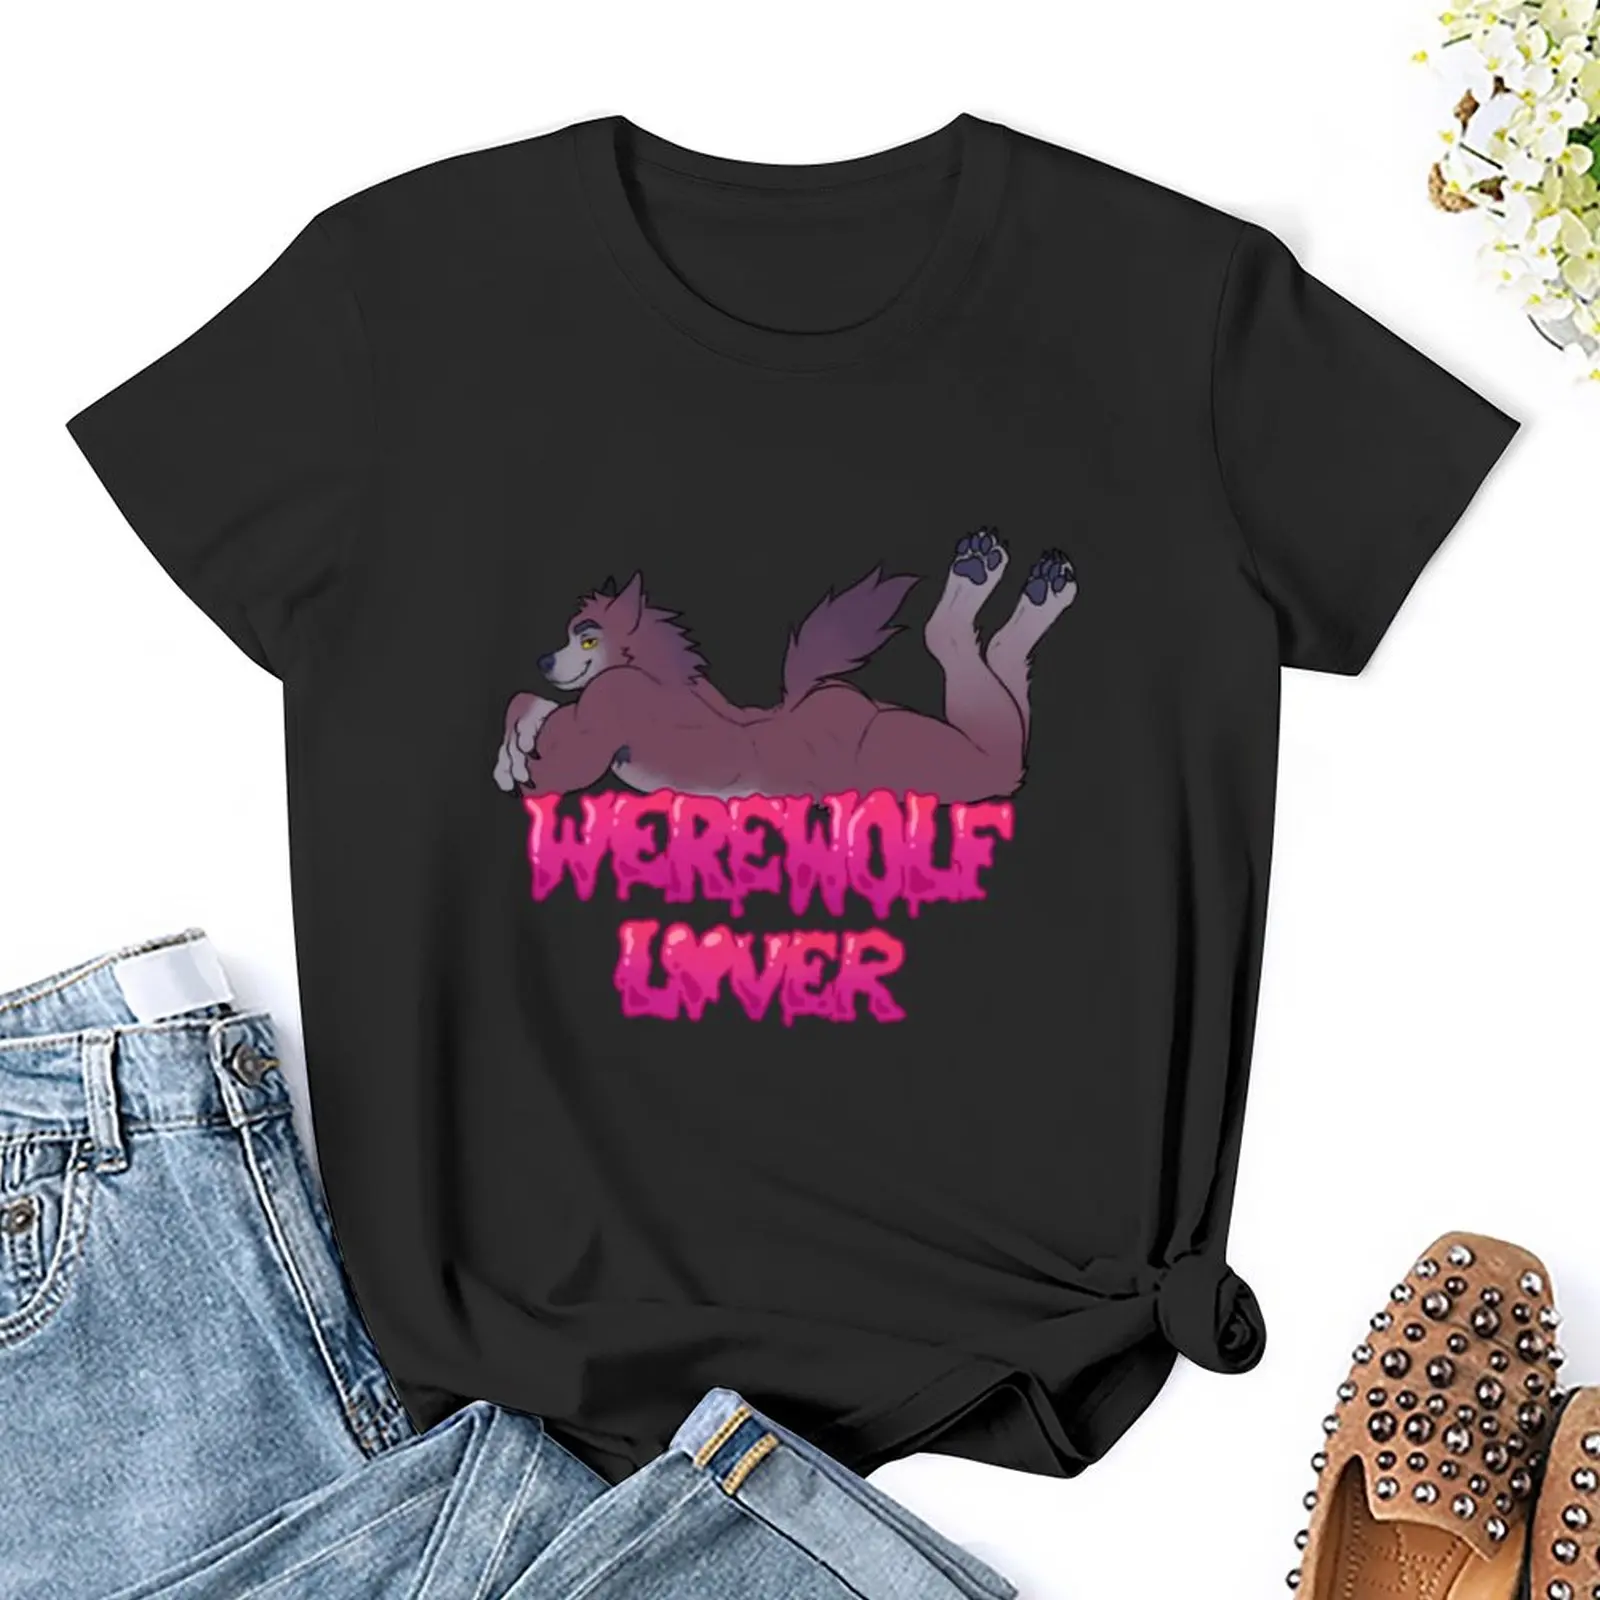 Футболка Werewolf Lover (candy), летняя одежда, эстетическая одежда, футболки для женщин, комплект одежды